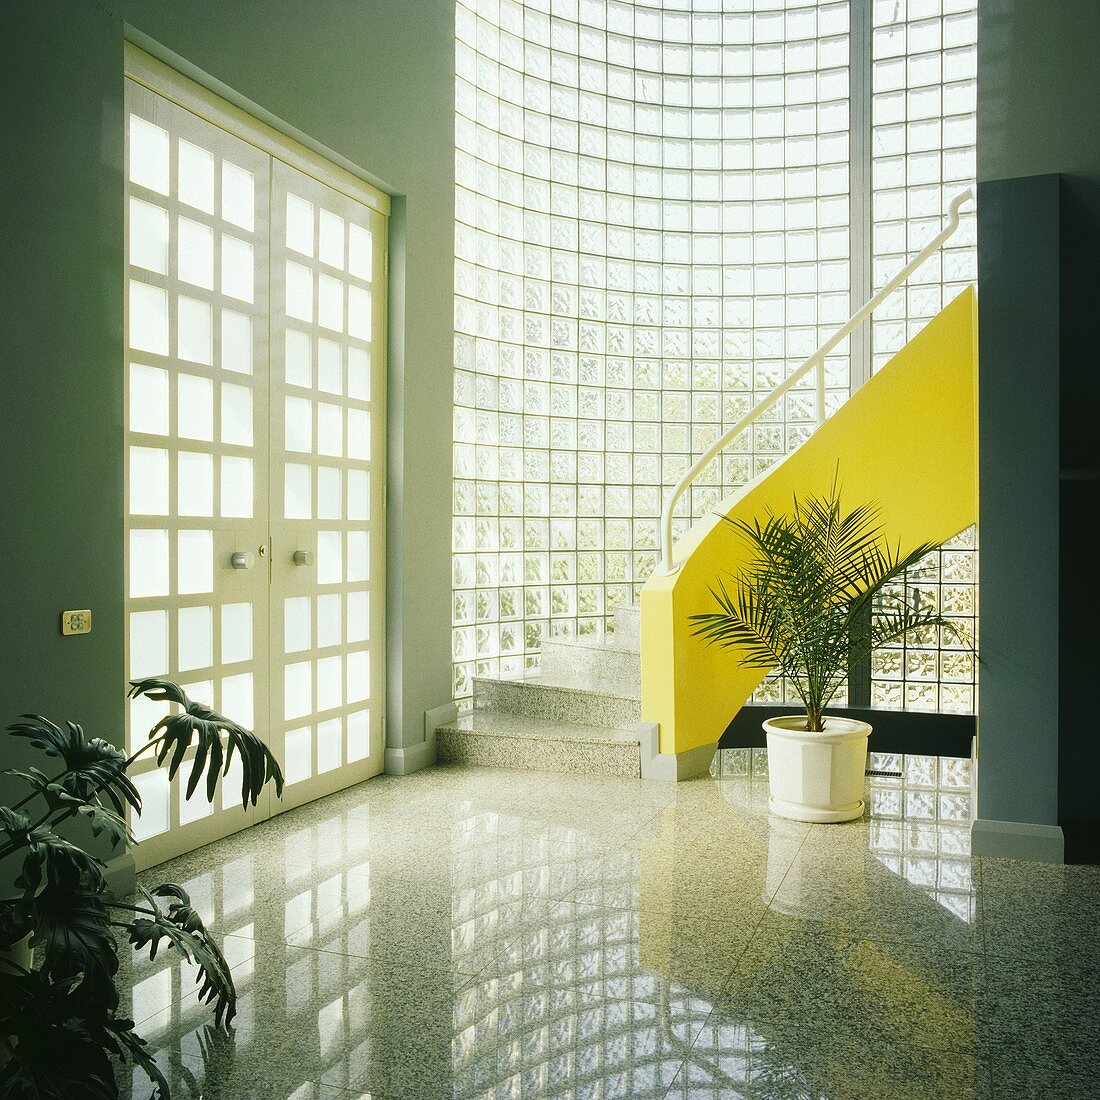 Eine bogenförmige Glassteinmauer und eine gelbe Treppe dominieren eine moderne Halle mit einem polierten Fußboden hellgrau und doppelt verglaste Türen